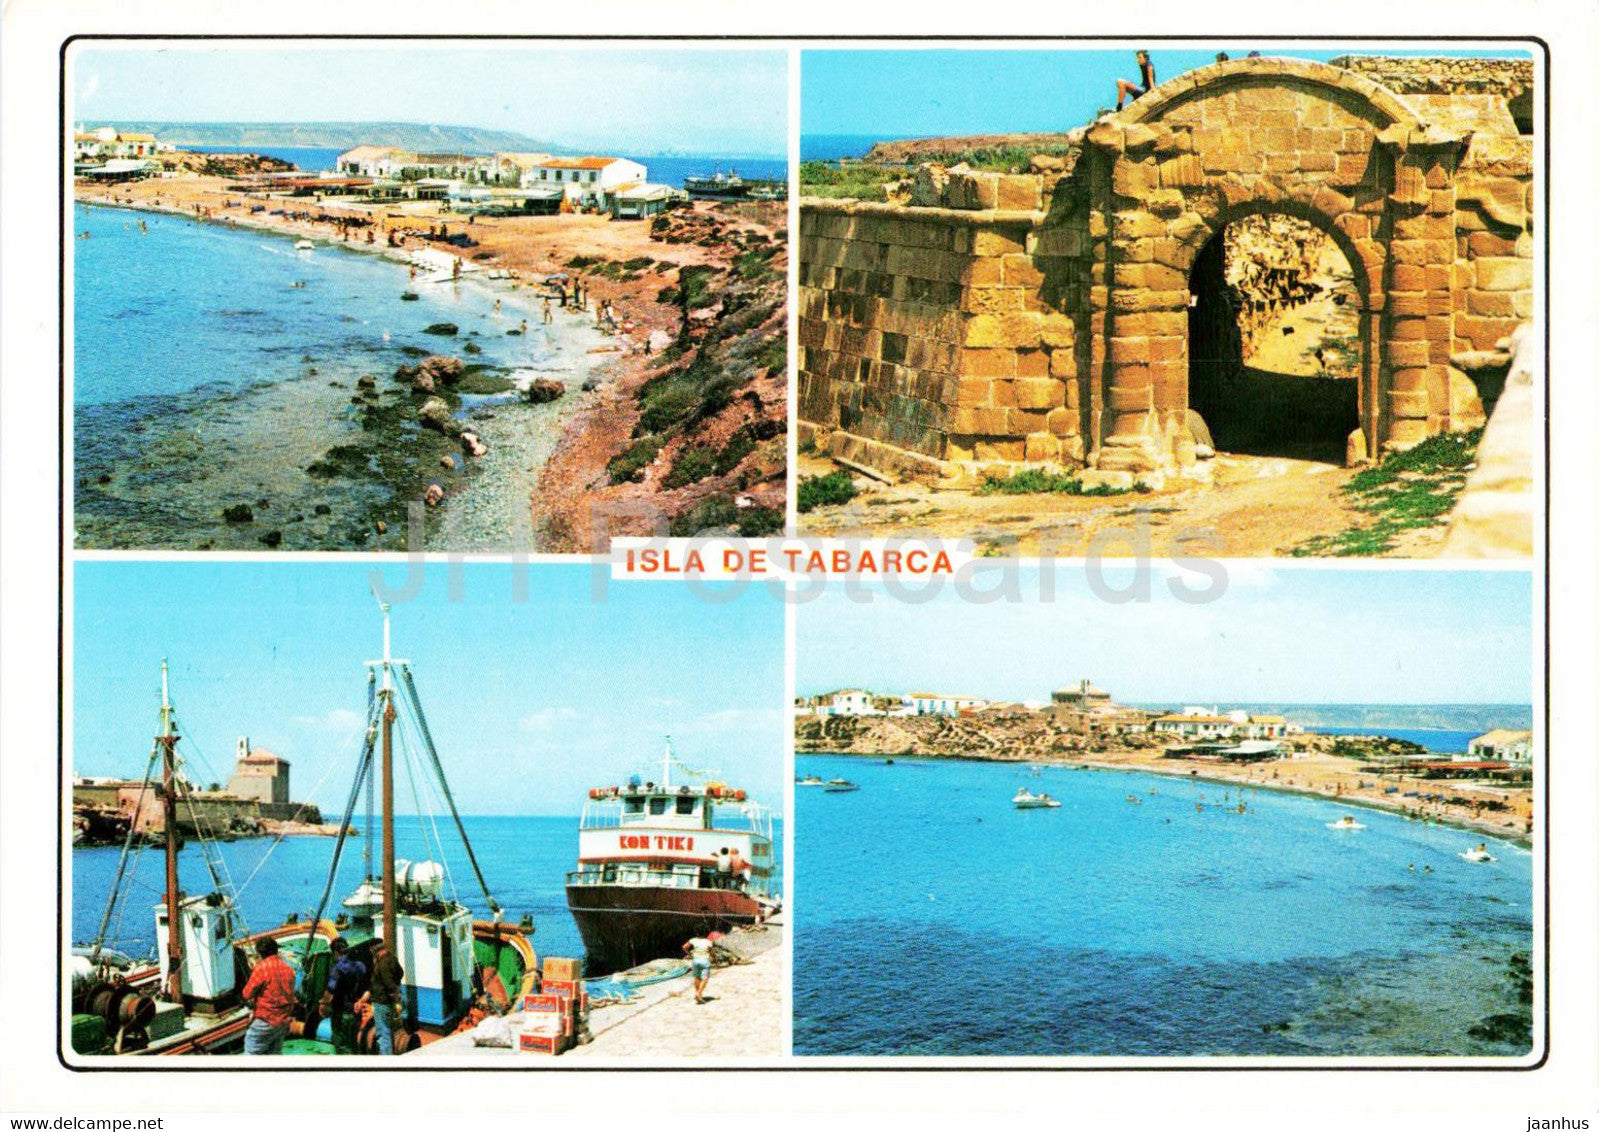 Isla de Tabarca - Playa - Puerto y Muralla - beach - port - wall - ship - boat - 219 - Spain - unused - JH Postcards